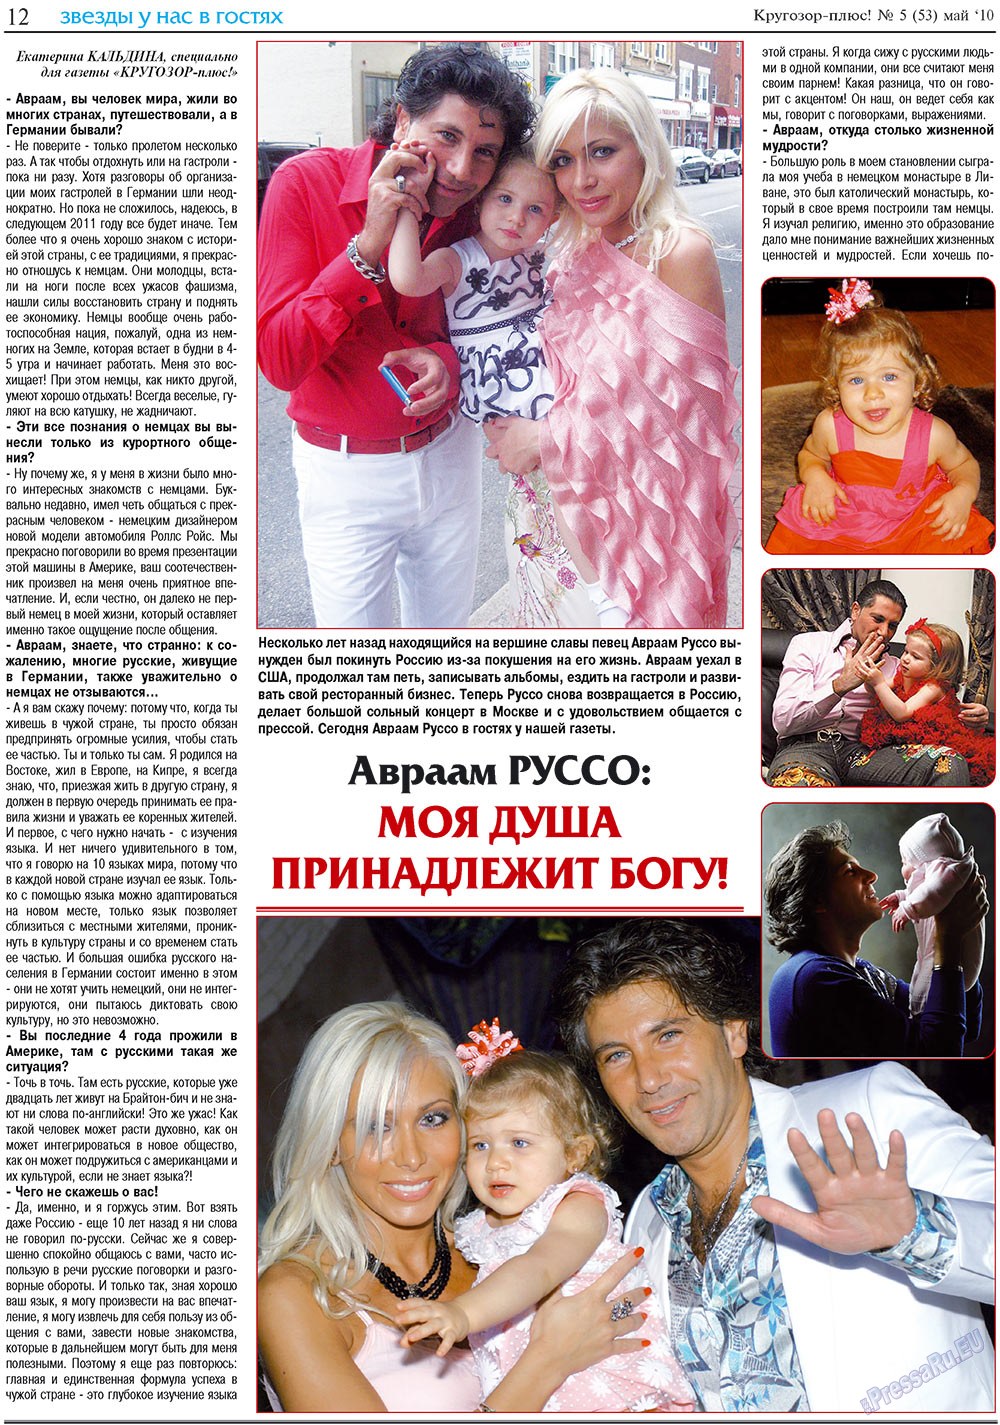 Кругозор плюс!, газета. 2010 №5 стр.28